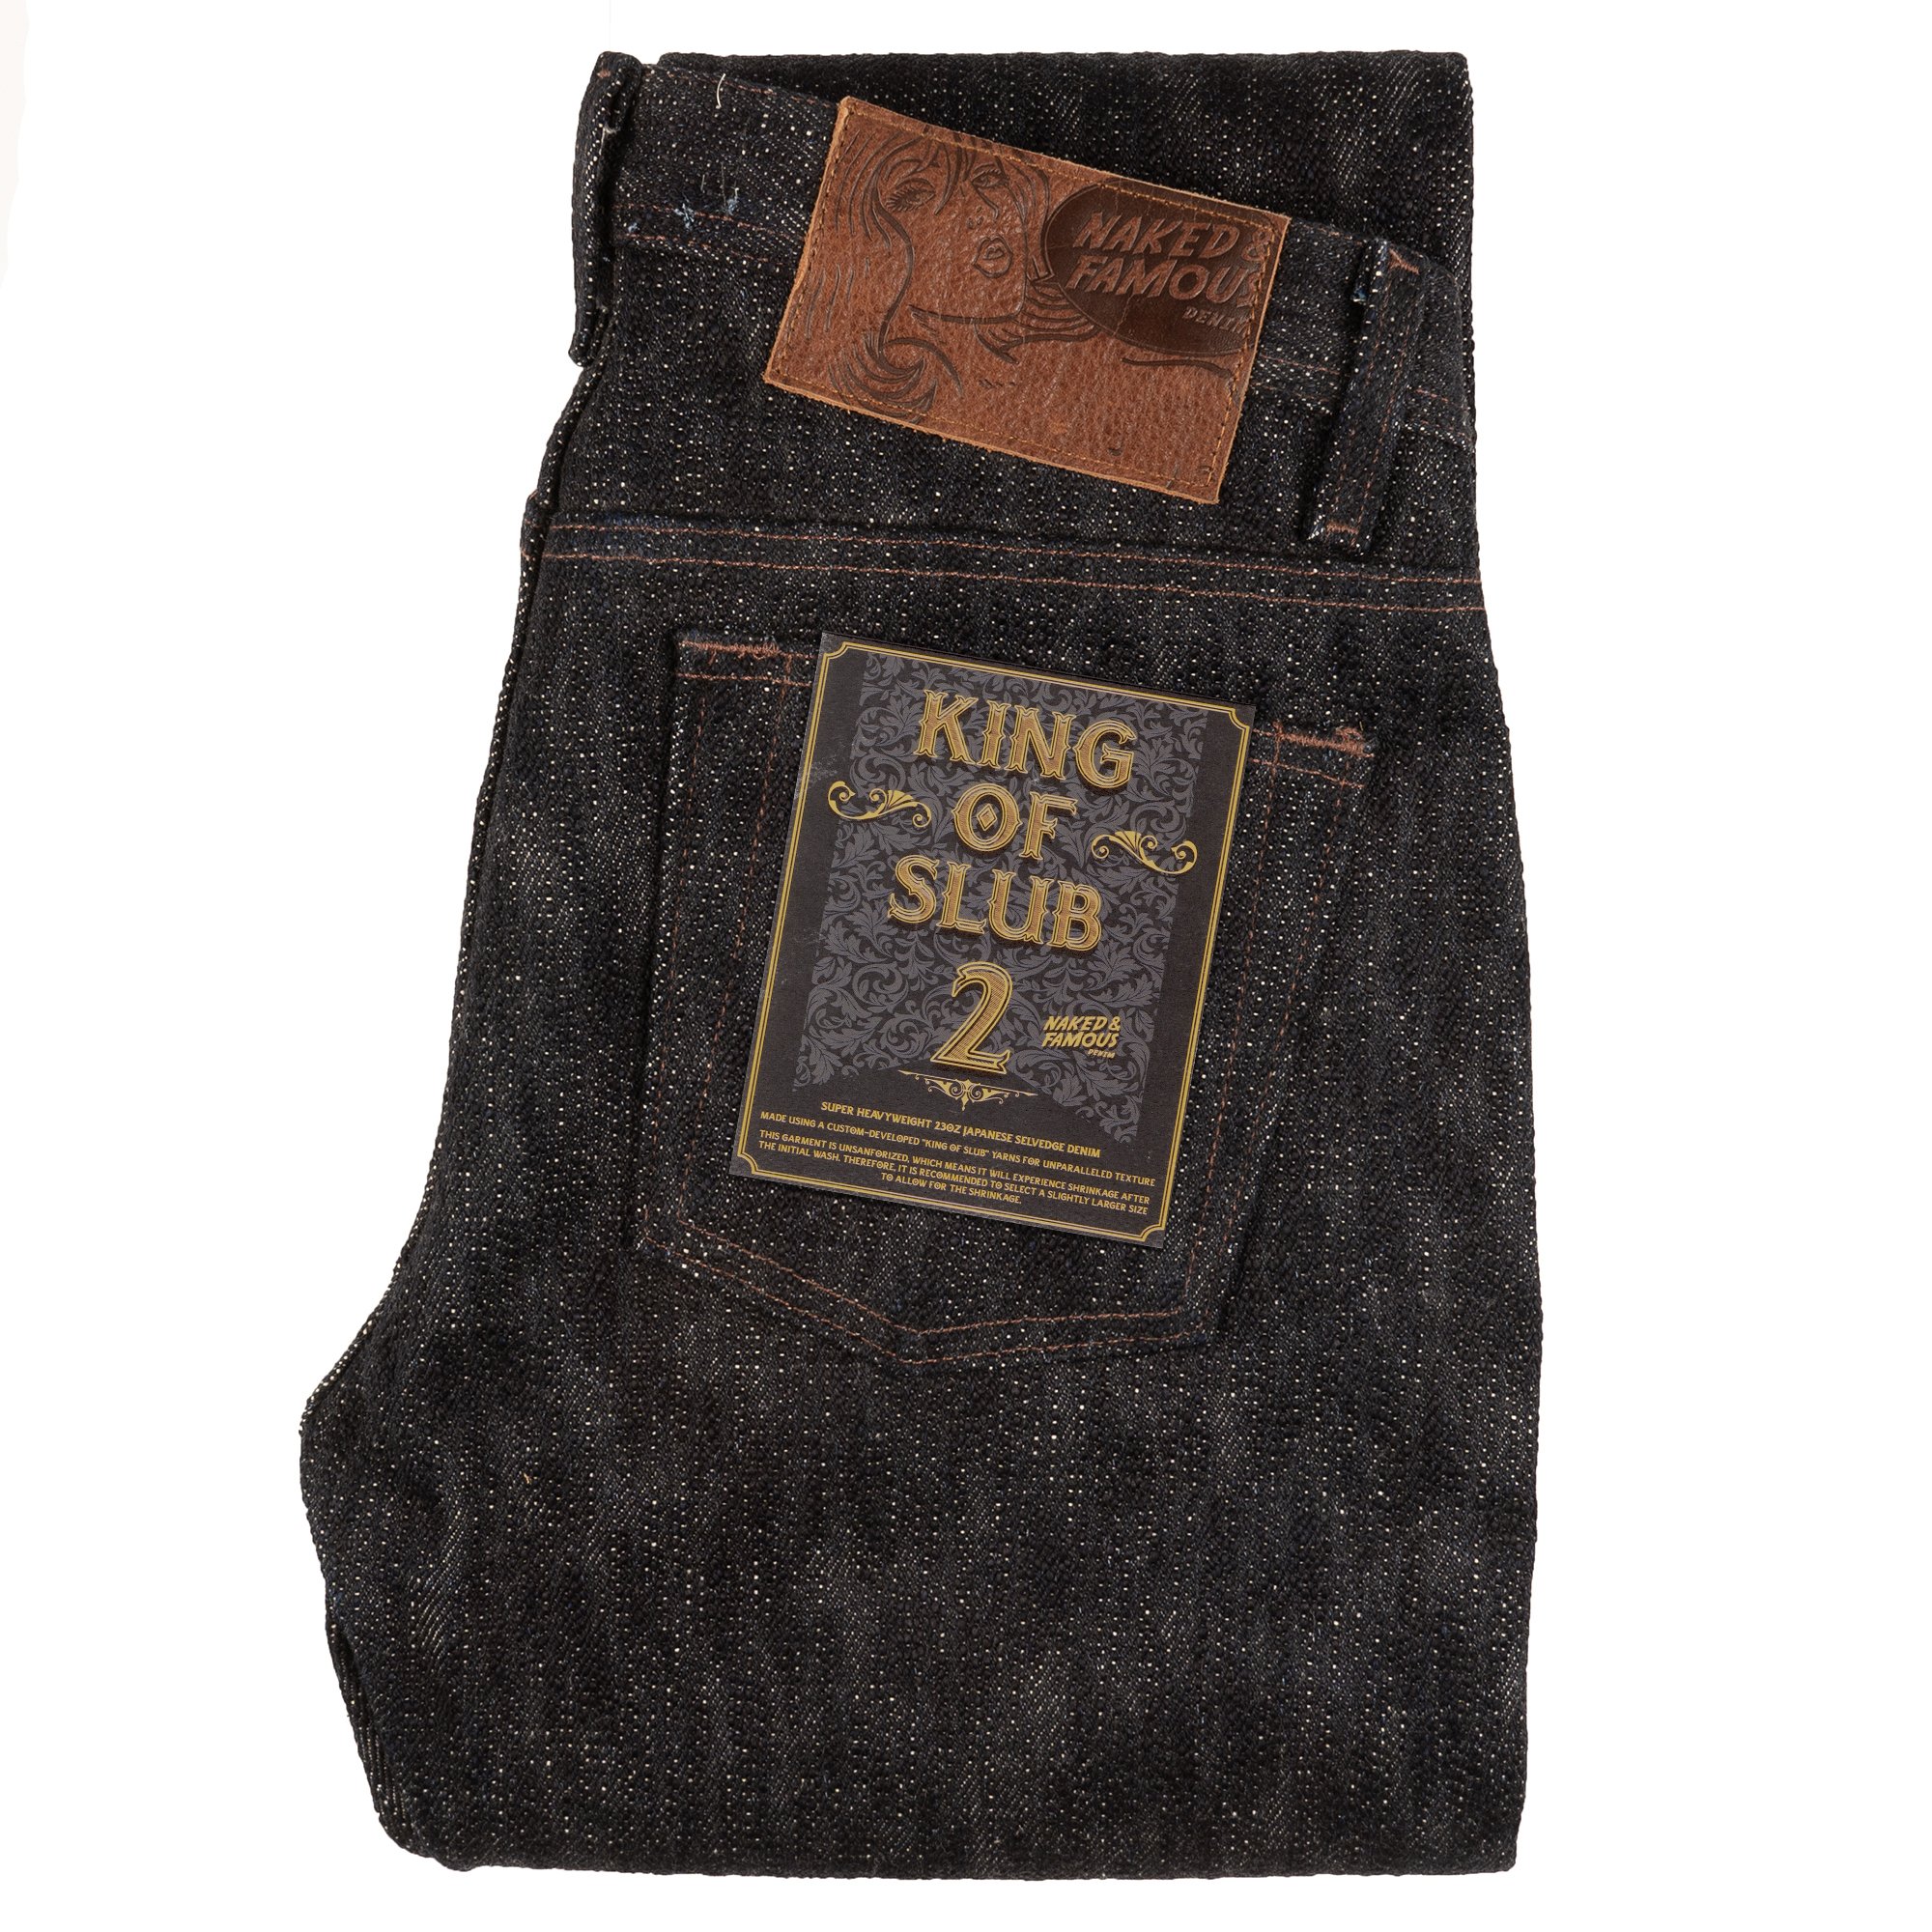  King Of Slub 2 - Jeans 